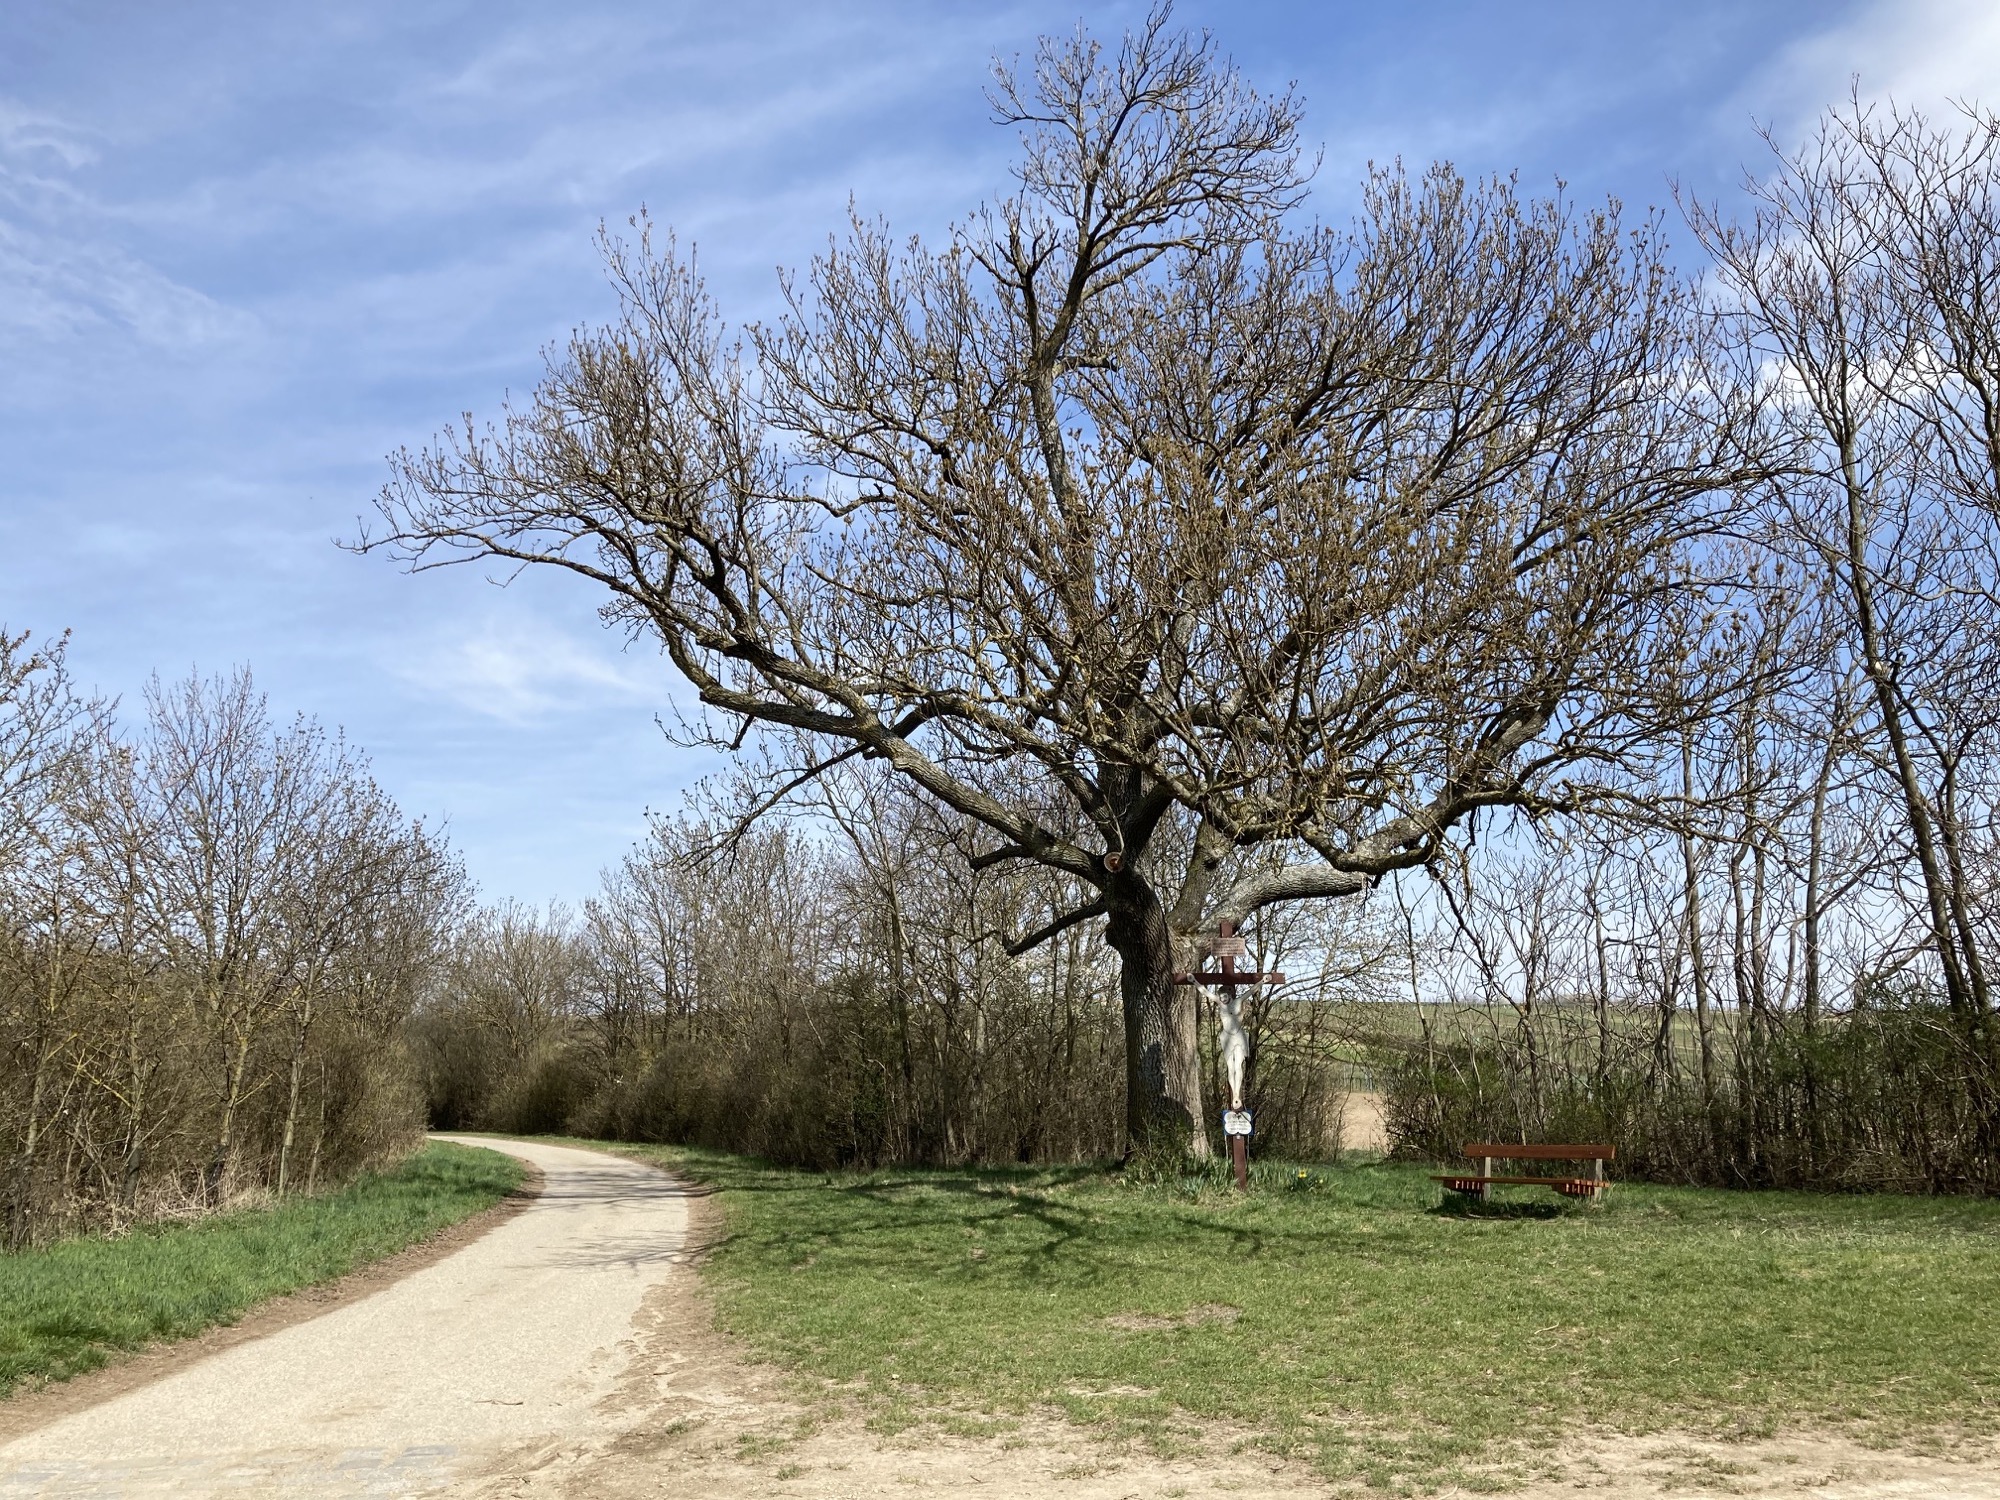 Kreuz unter einem ausladenden Baum, daneben ein Feldweg sowie eine Rastbank